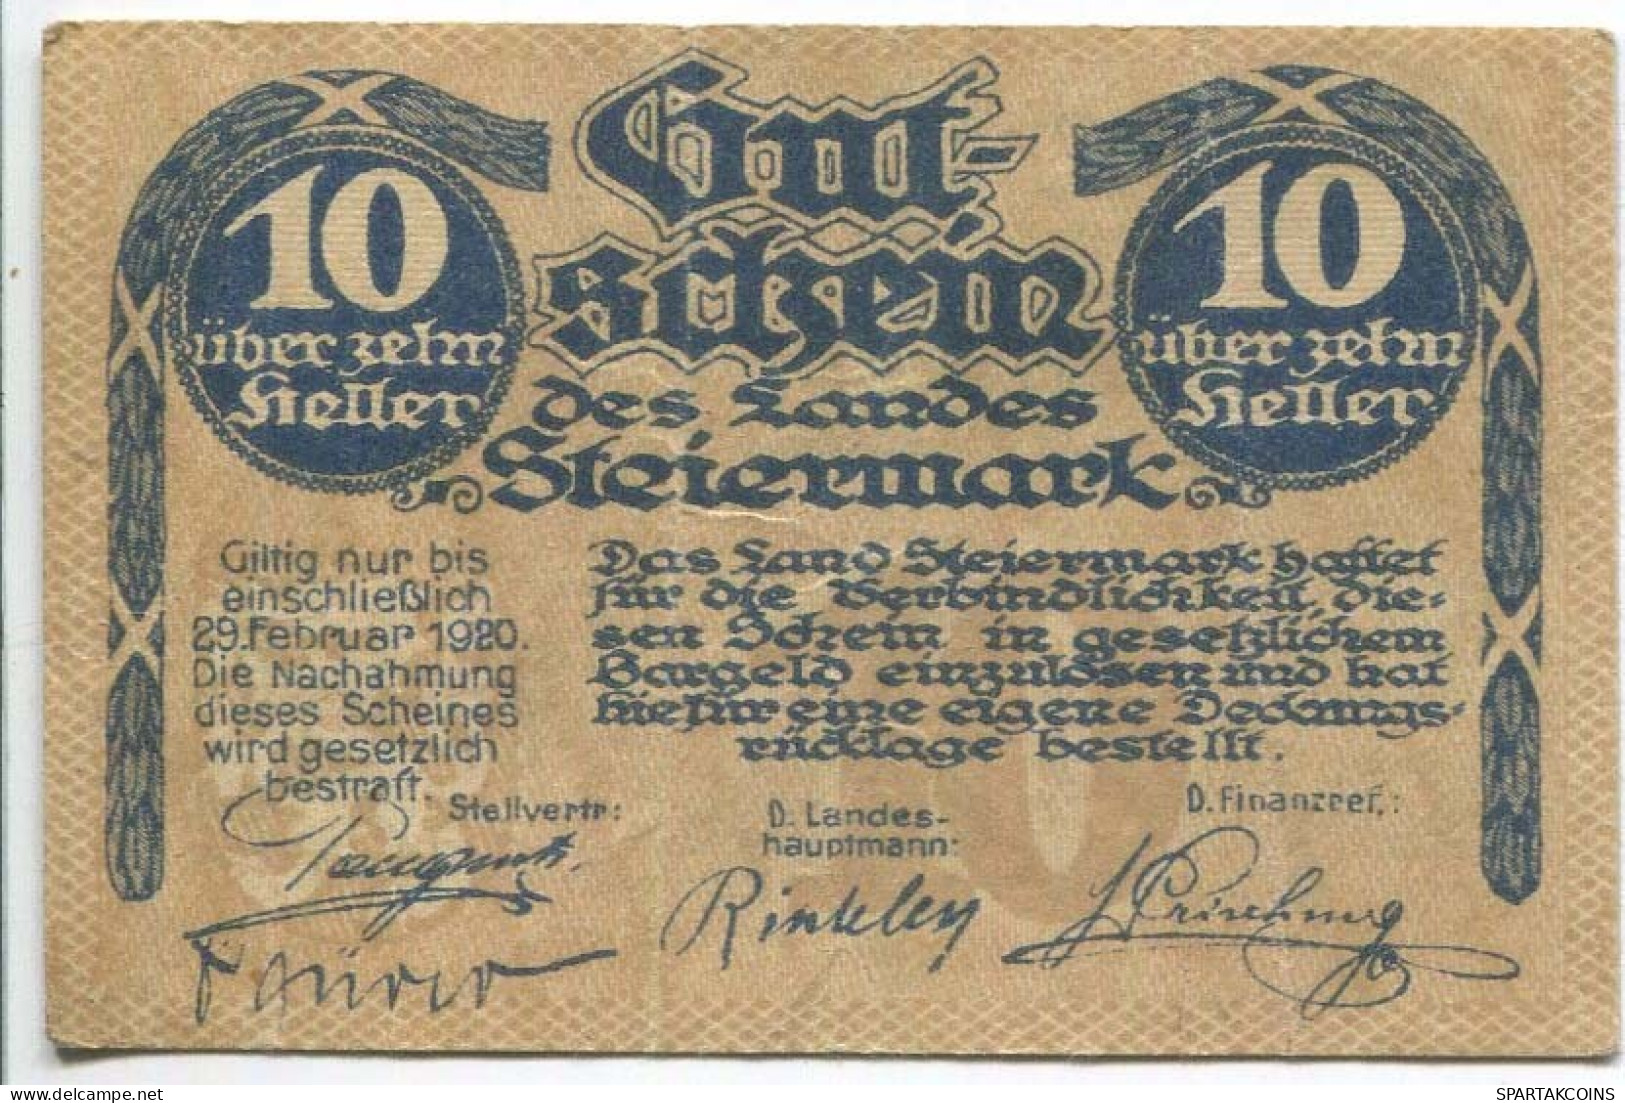 10 HELLER 1919 Stadt STYRIA Styria Österreich Notgeld Papiergeld Banknote #PL777 - [11] Local Banknote Issues